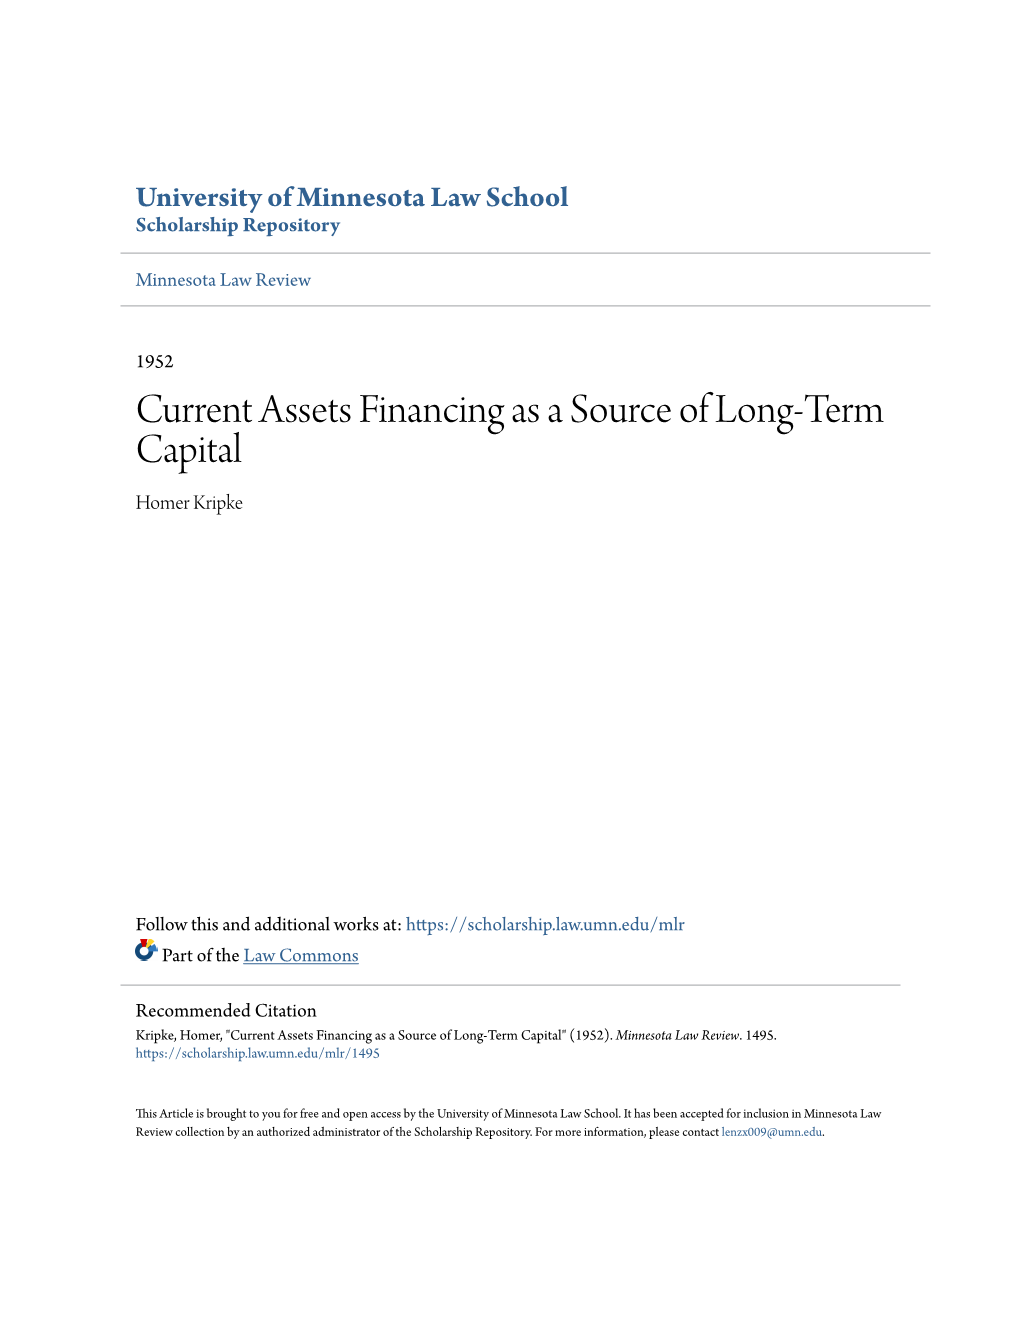 Current Assets Financing As a Source of Long-Term Capital Homer Kripke